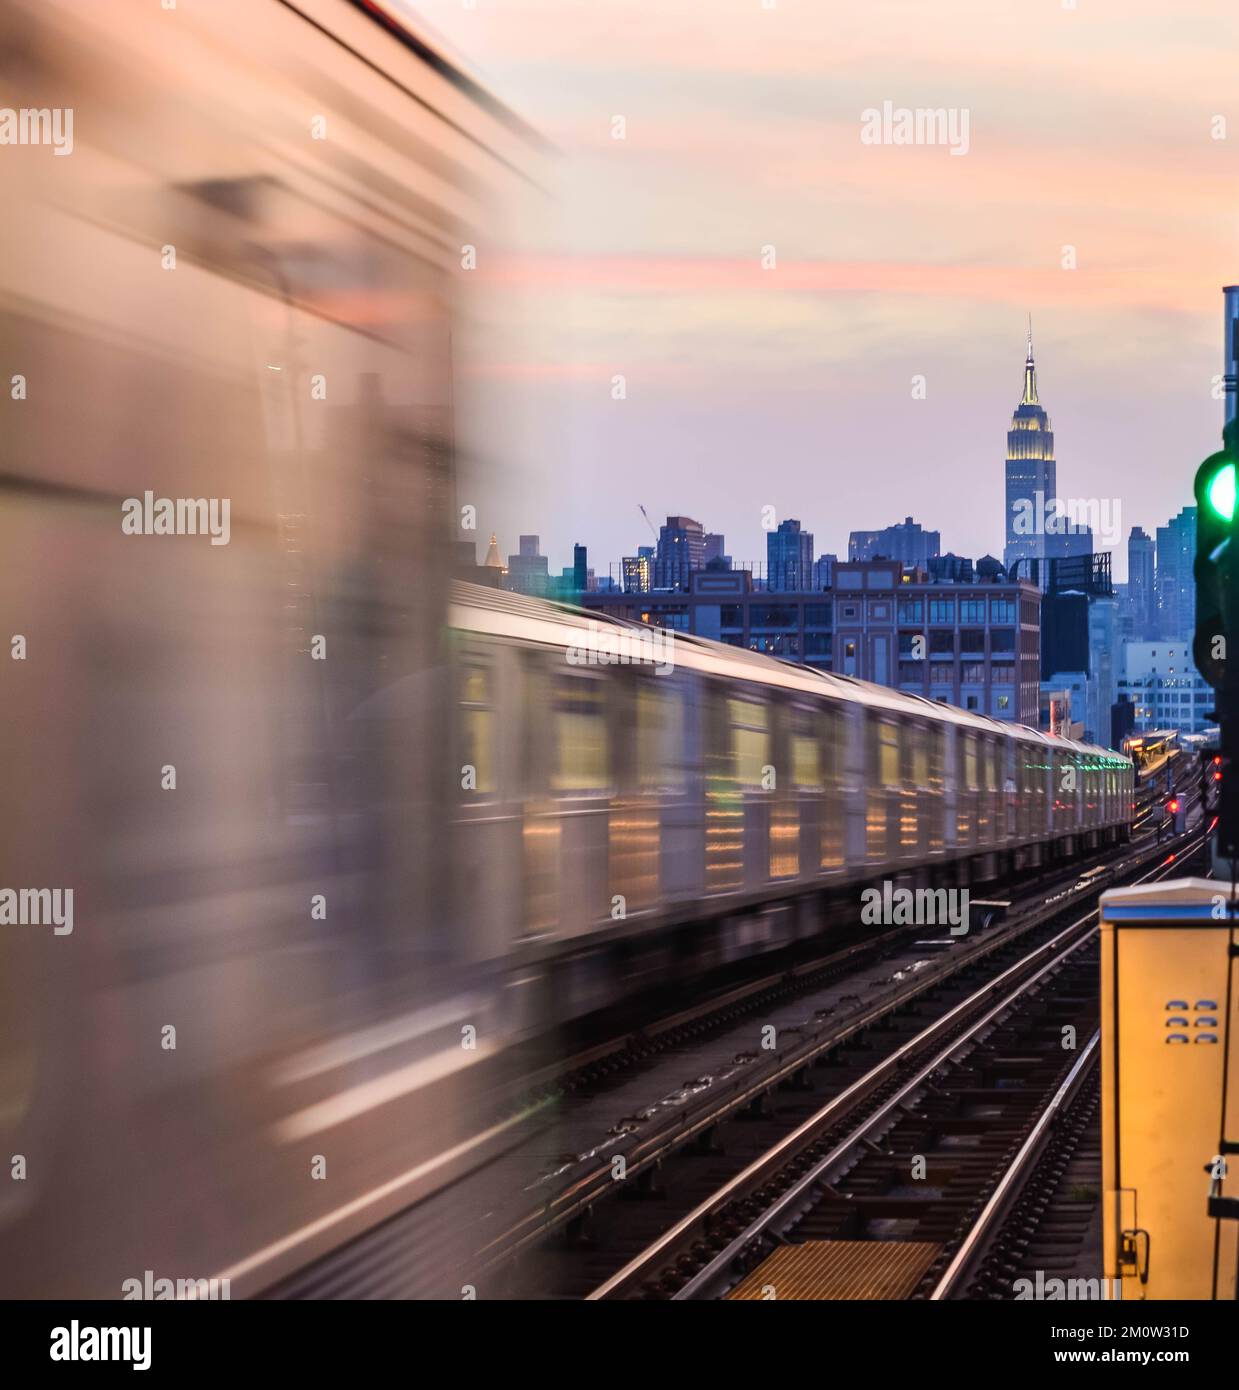 U-Bahn Bahnsteig New York City Transit Öffentliche Verkehrsmittel Kopierraum Grafikressourcen Stockfoto